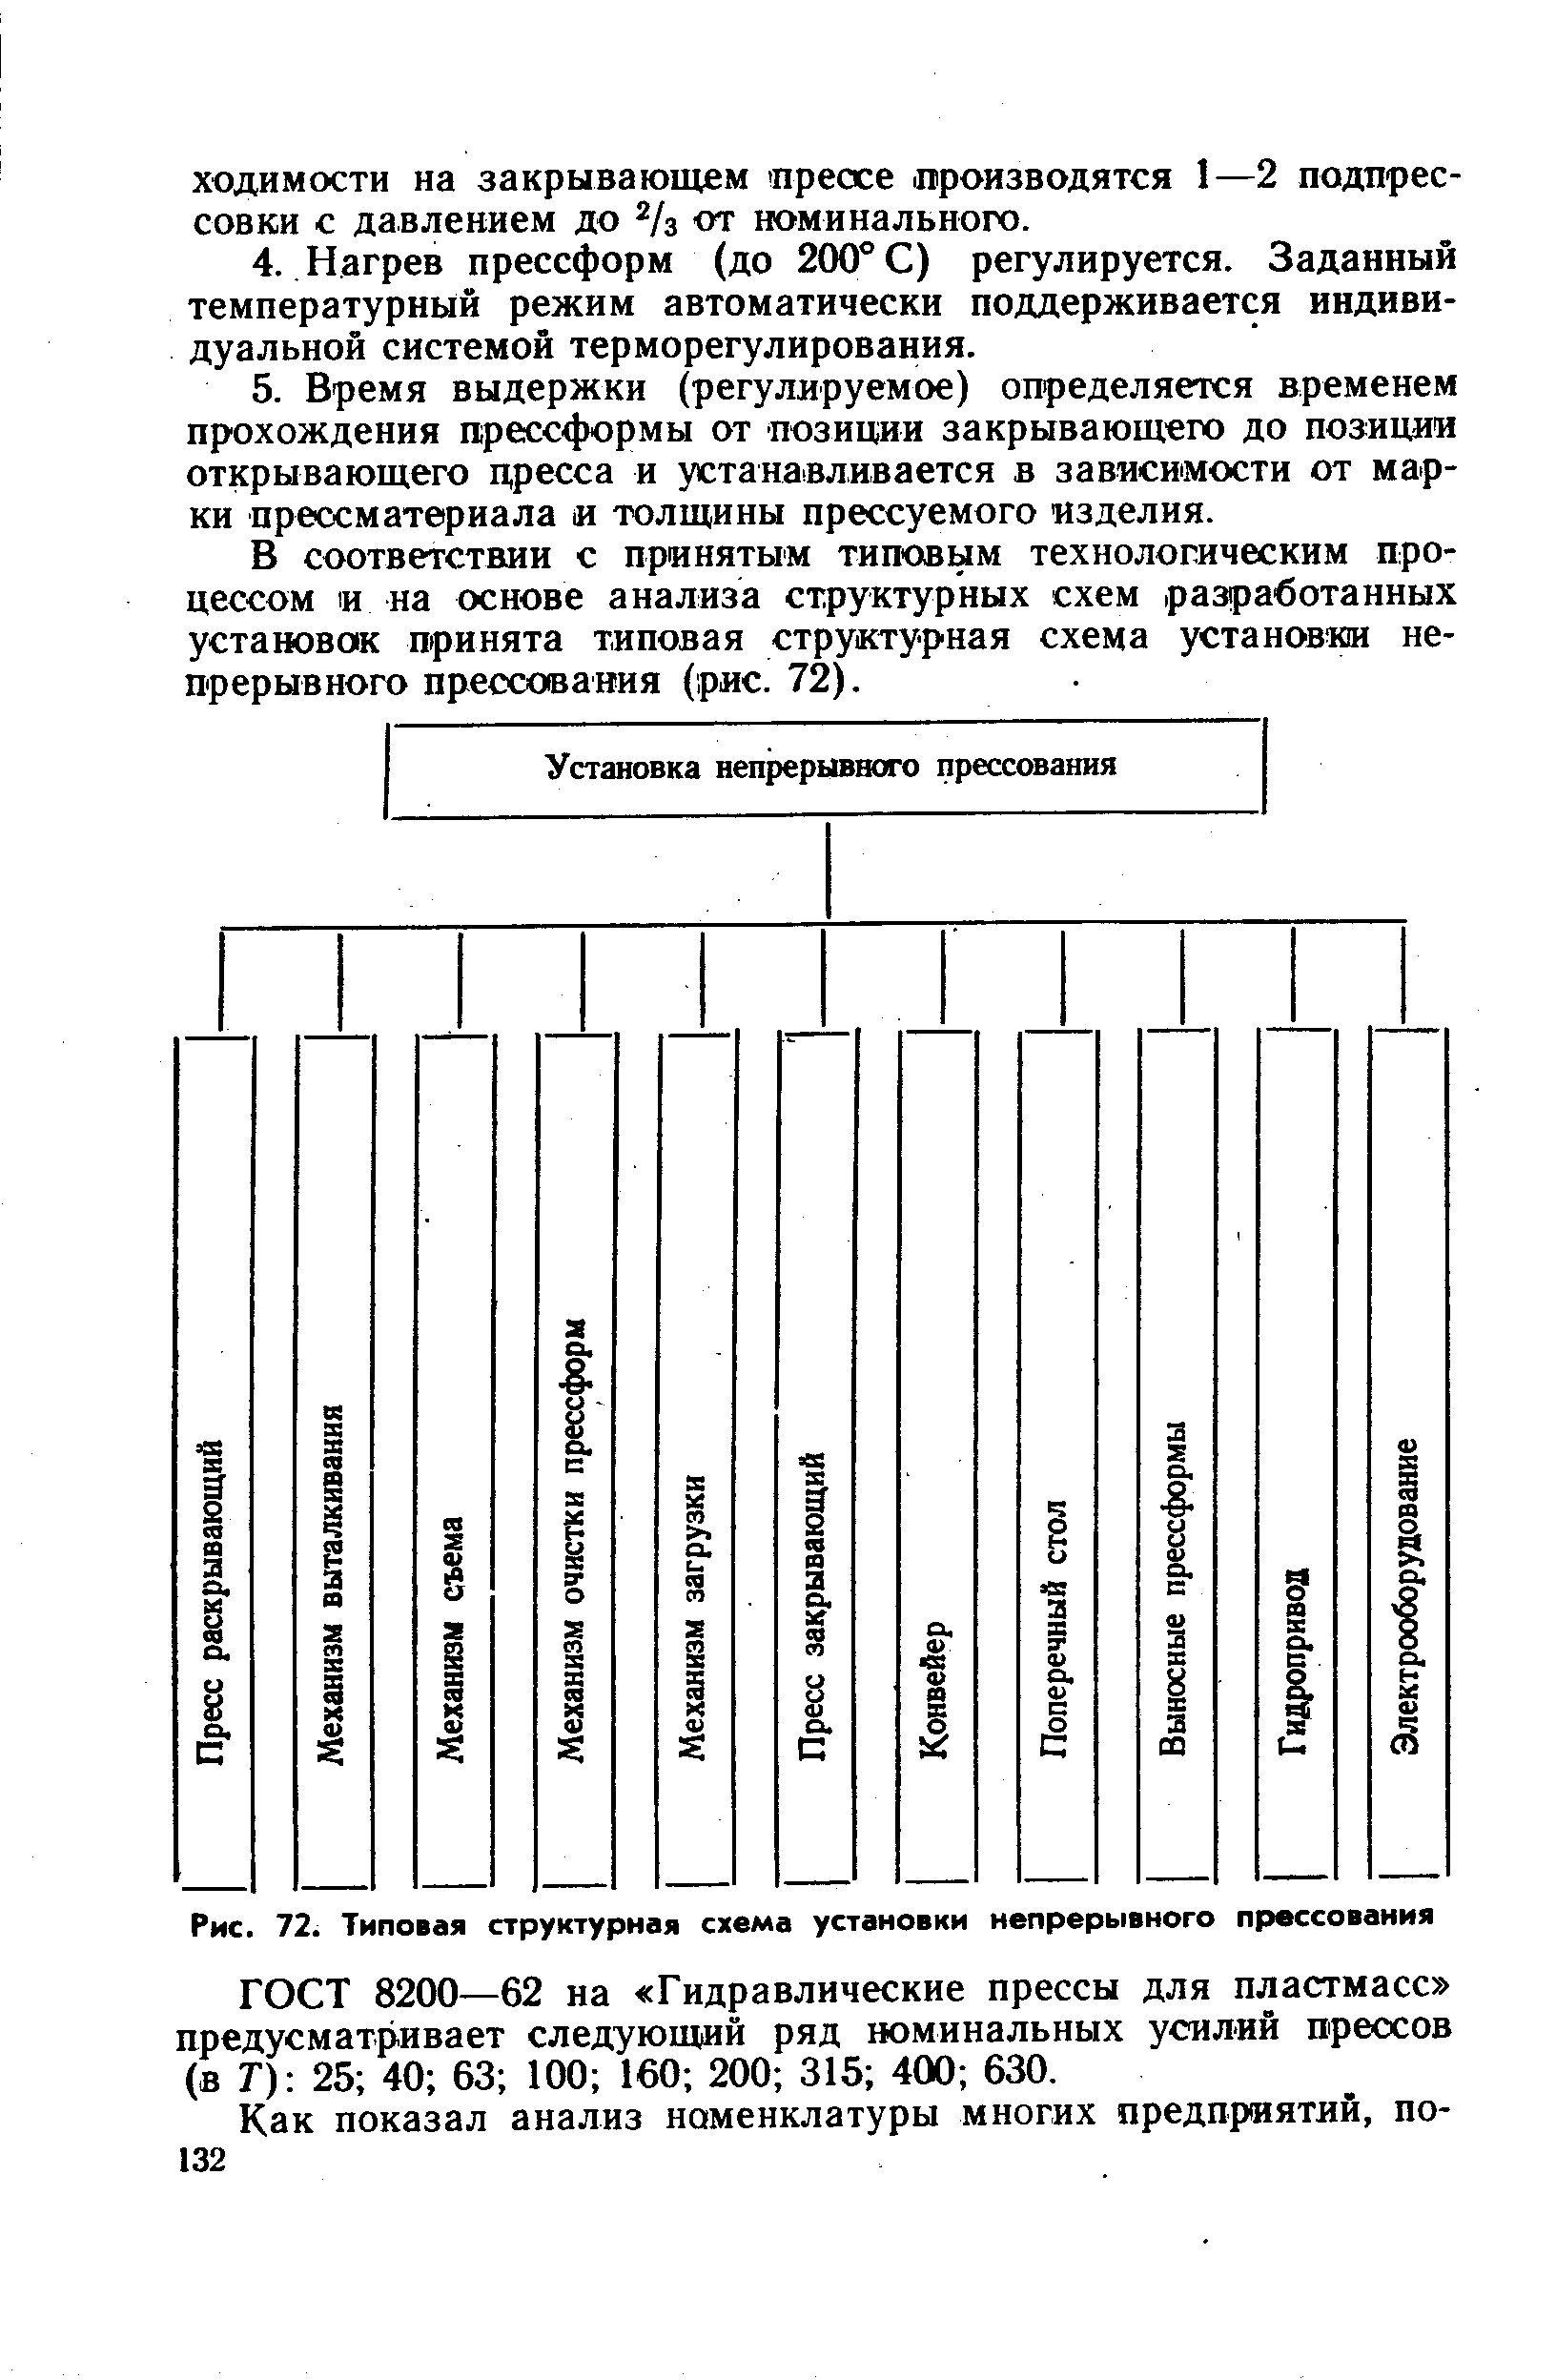 Рис. 72. Типовая структурная схема установки непрерывного прессования
